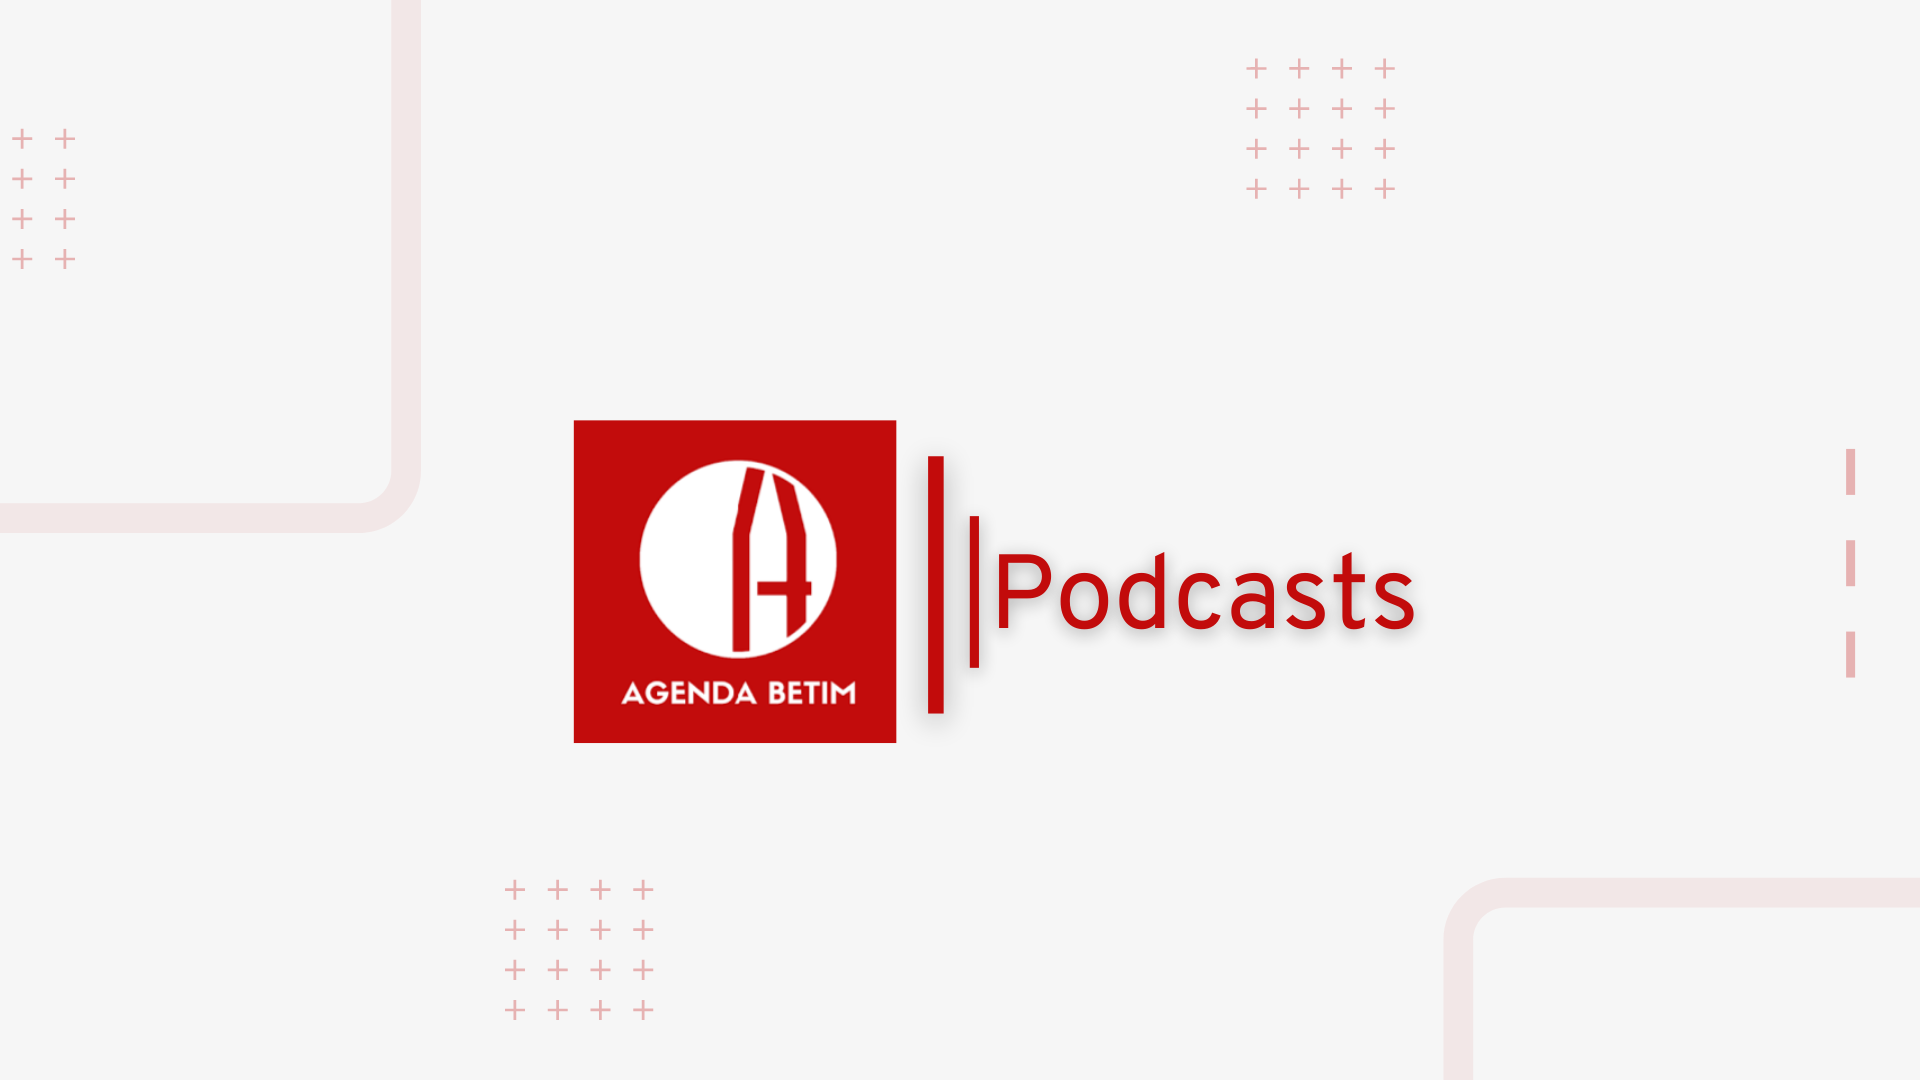 Arte Podcasts Agenda Betim